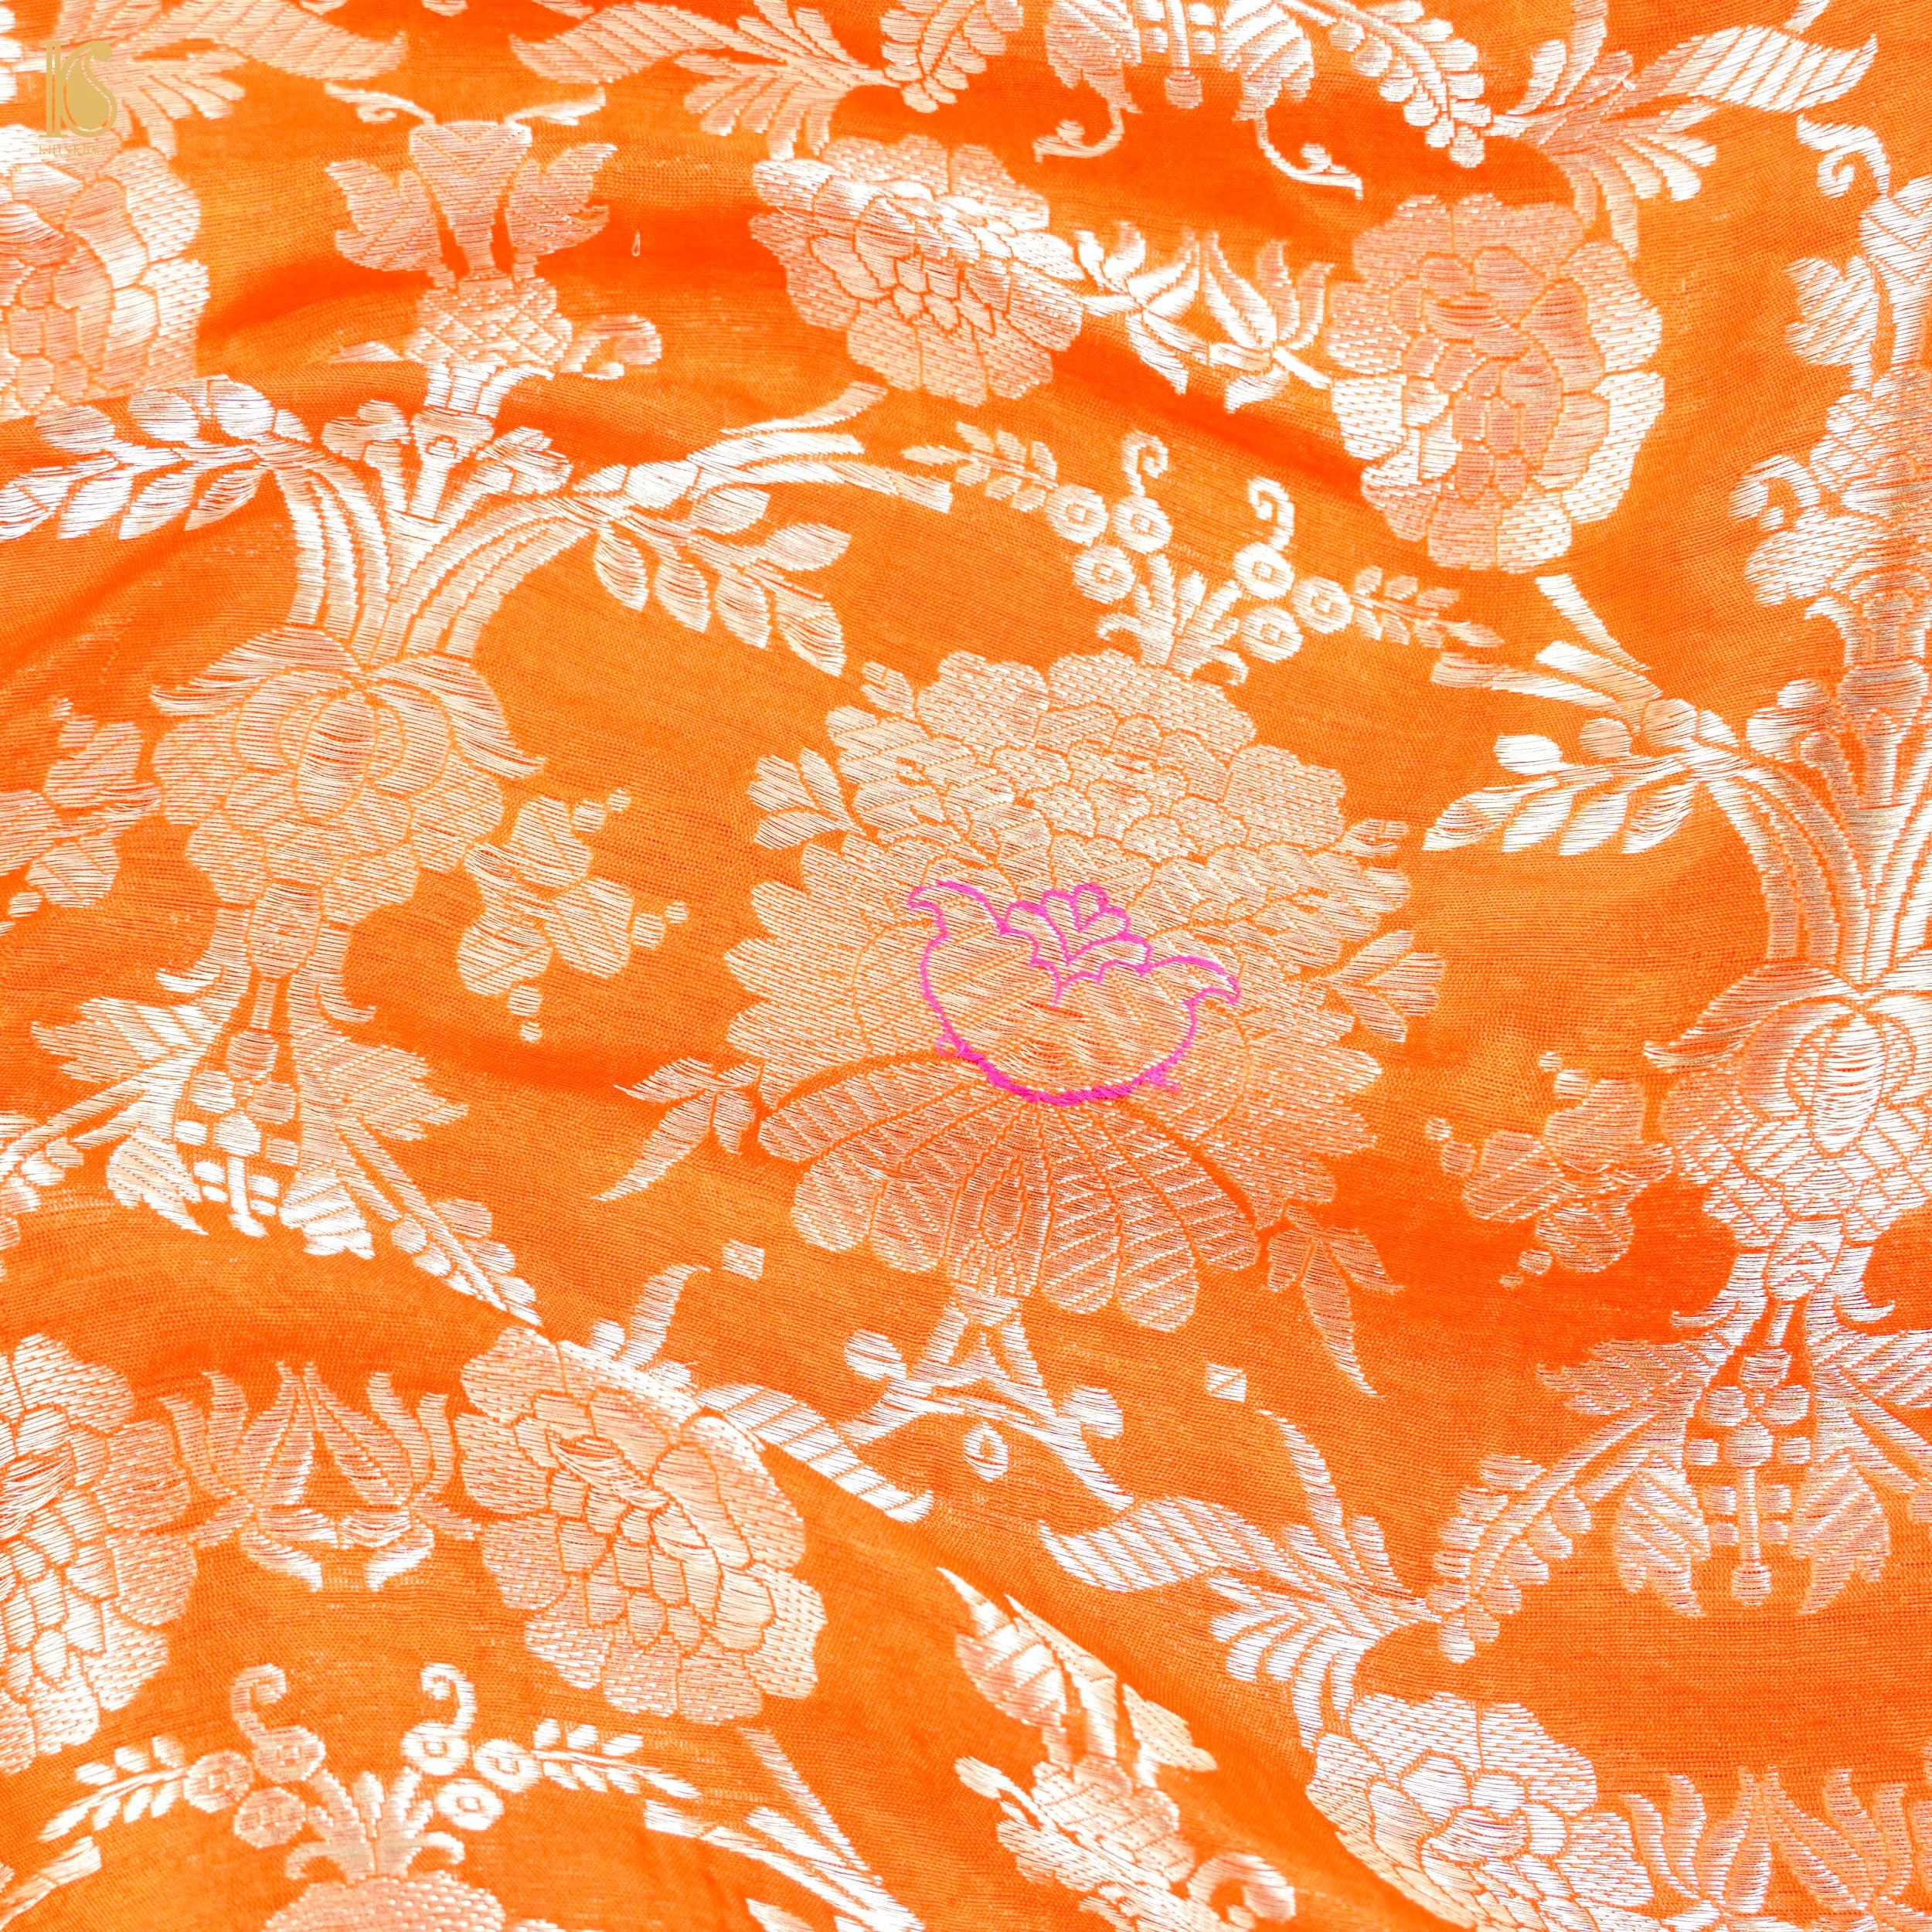 Orange Pure Brocade Banarasi Mehraab Boota Fabric